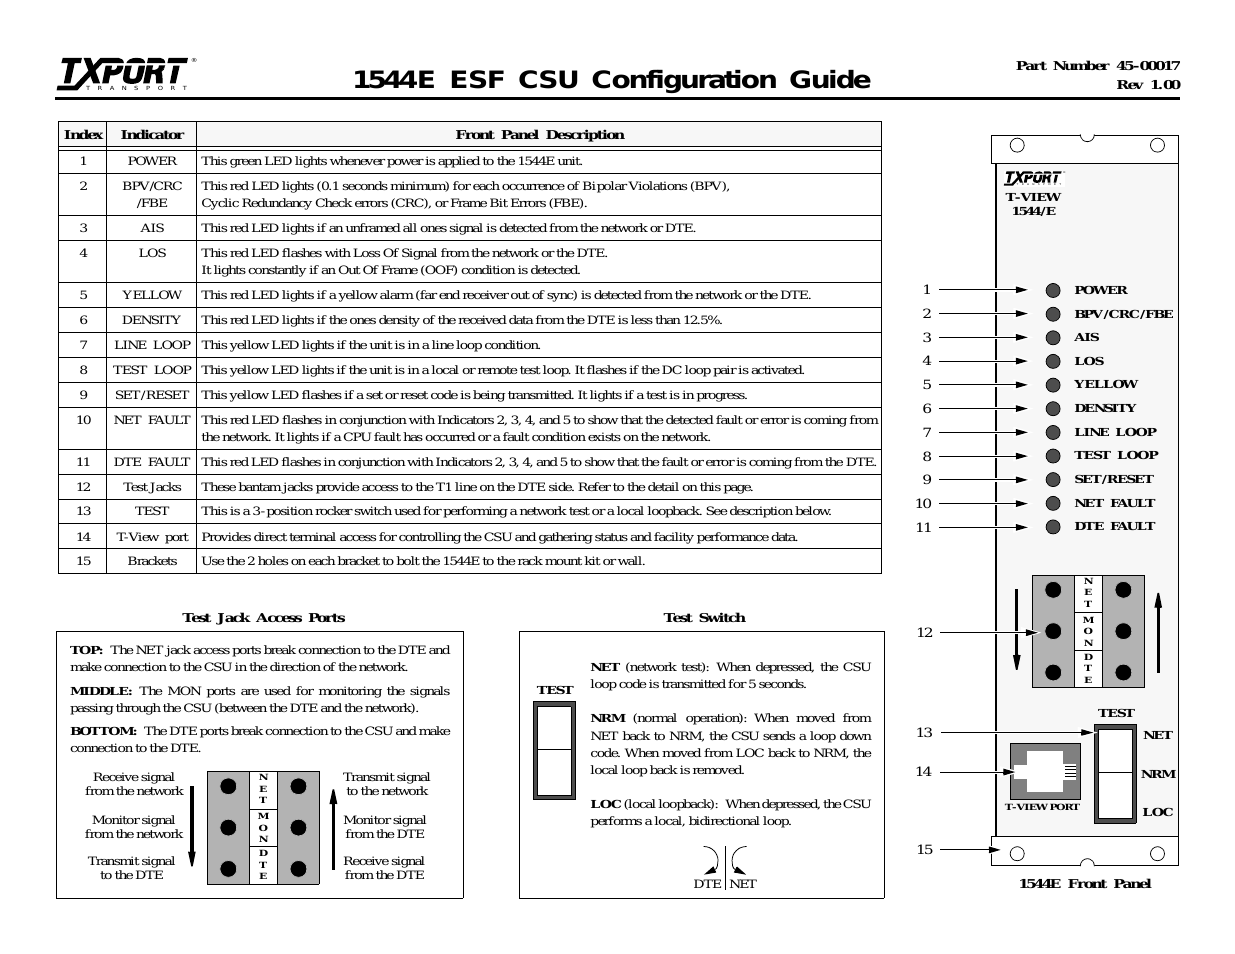 1544E (CG) Configuration/Installation Guide